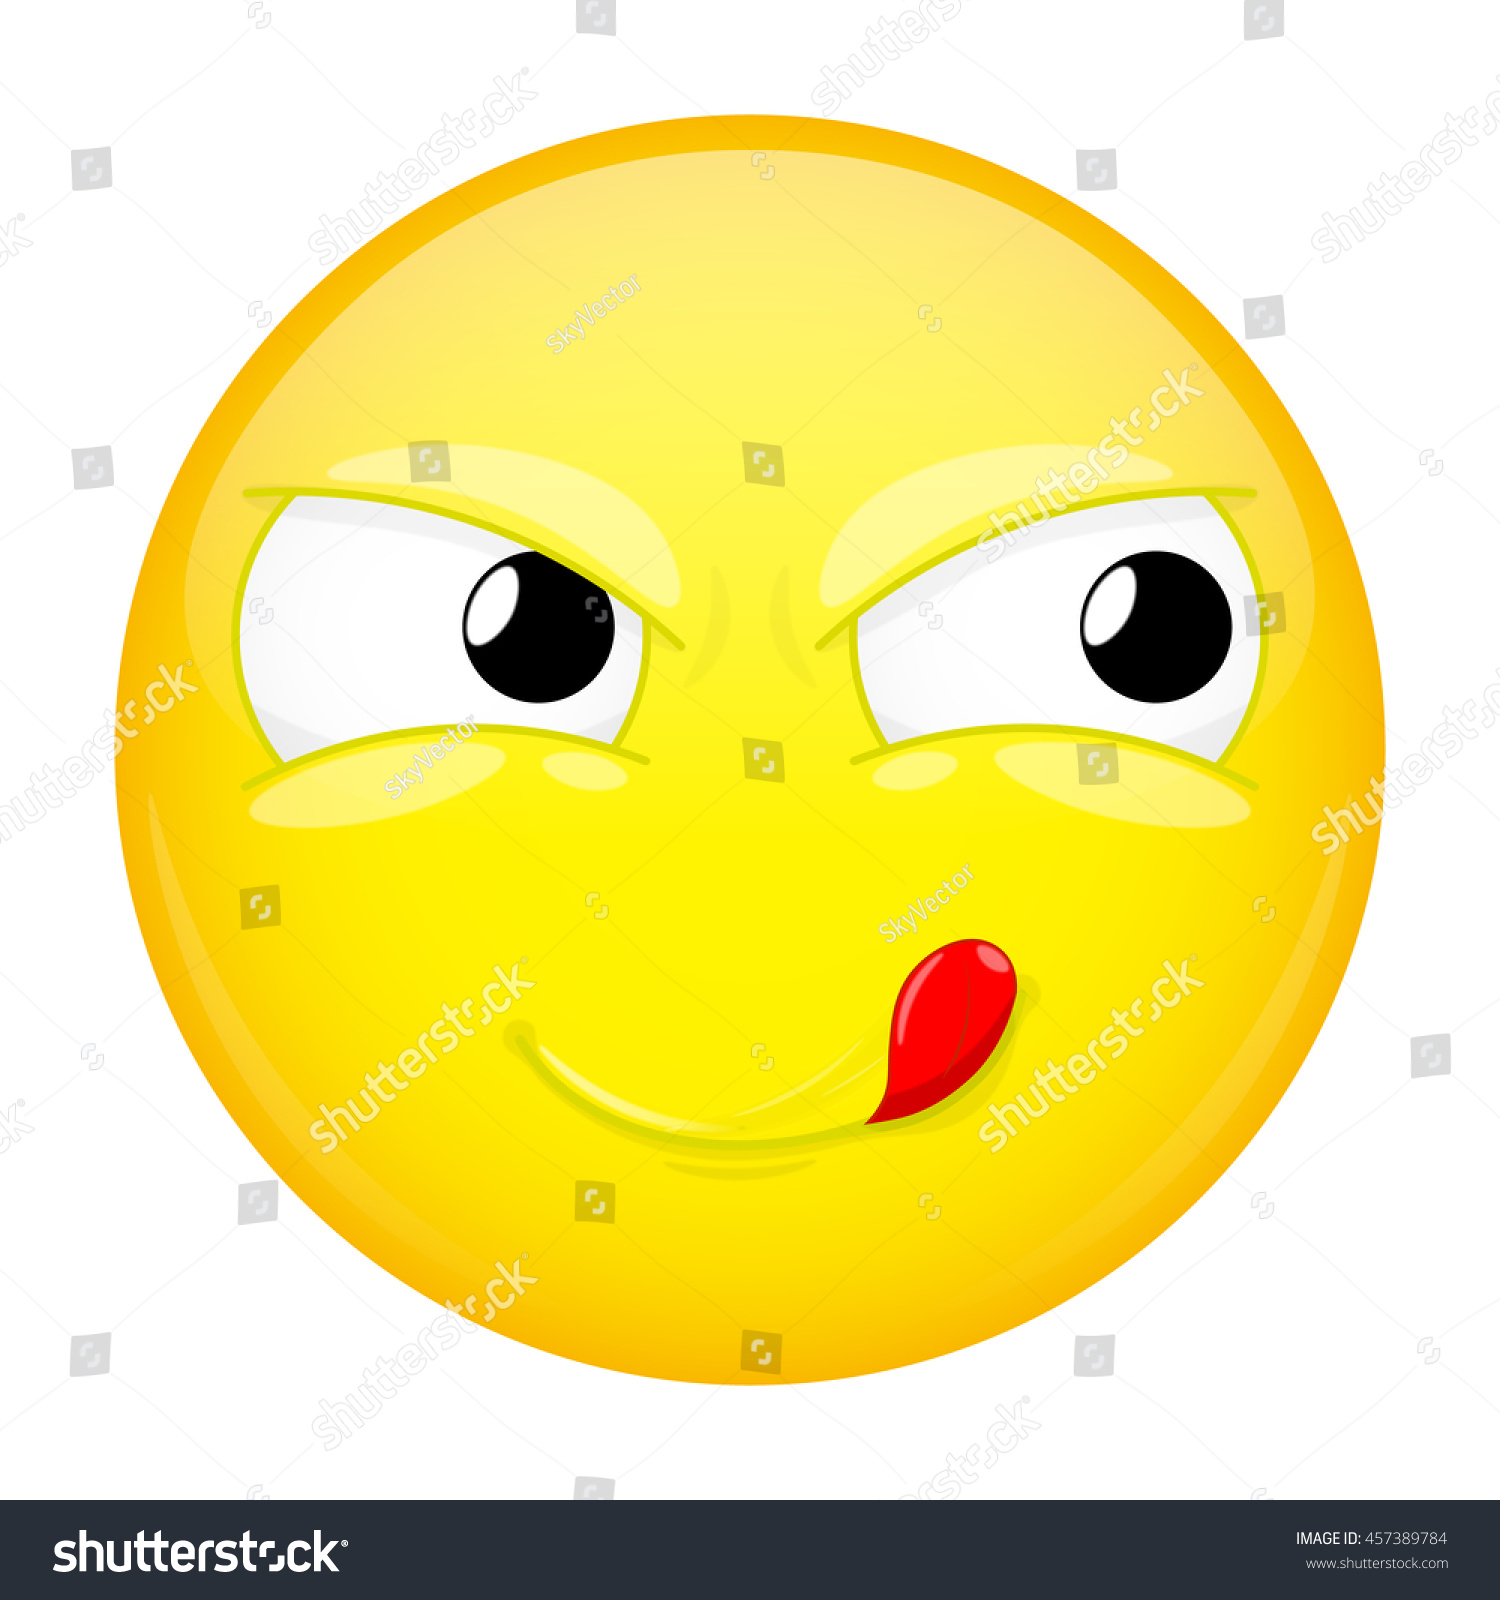 Un emoticono para tu estado de ánimo - Página 6 Stock-vector-lick-lips-emoji-good-emotion-yummy-emoticon-vector-illustration-smile-icon-457389784